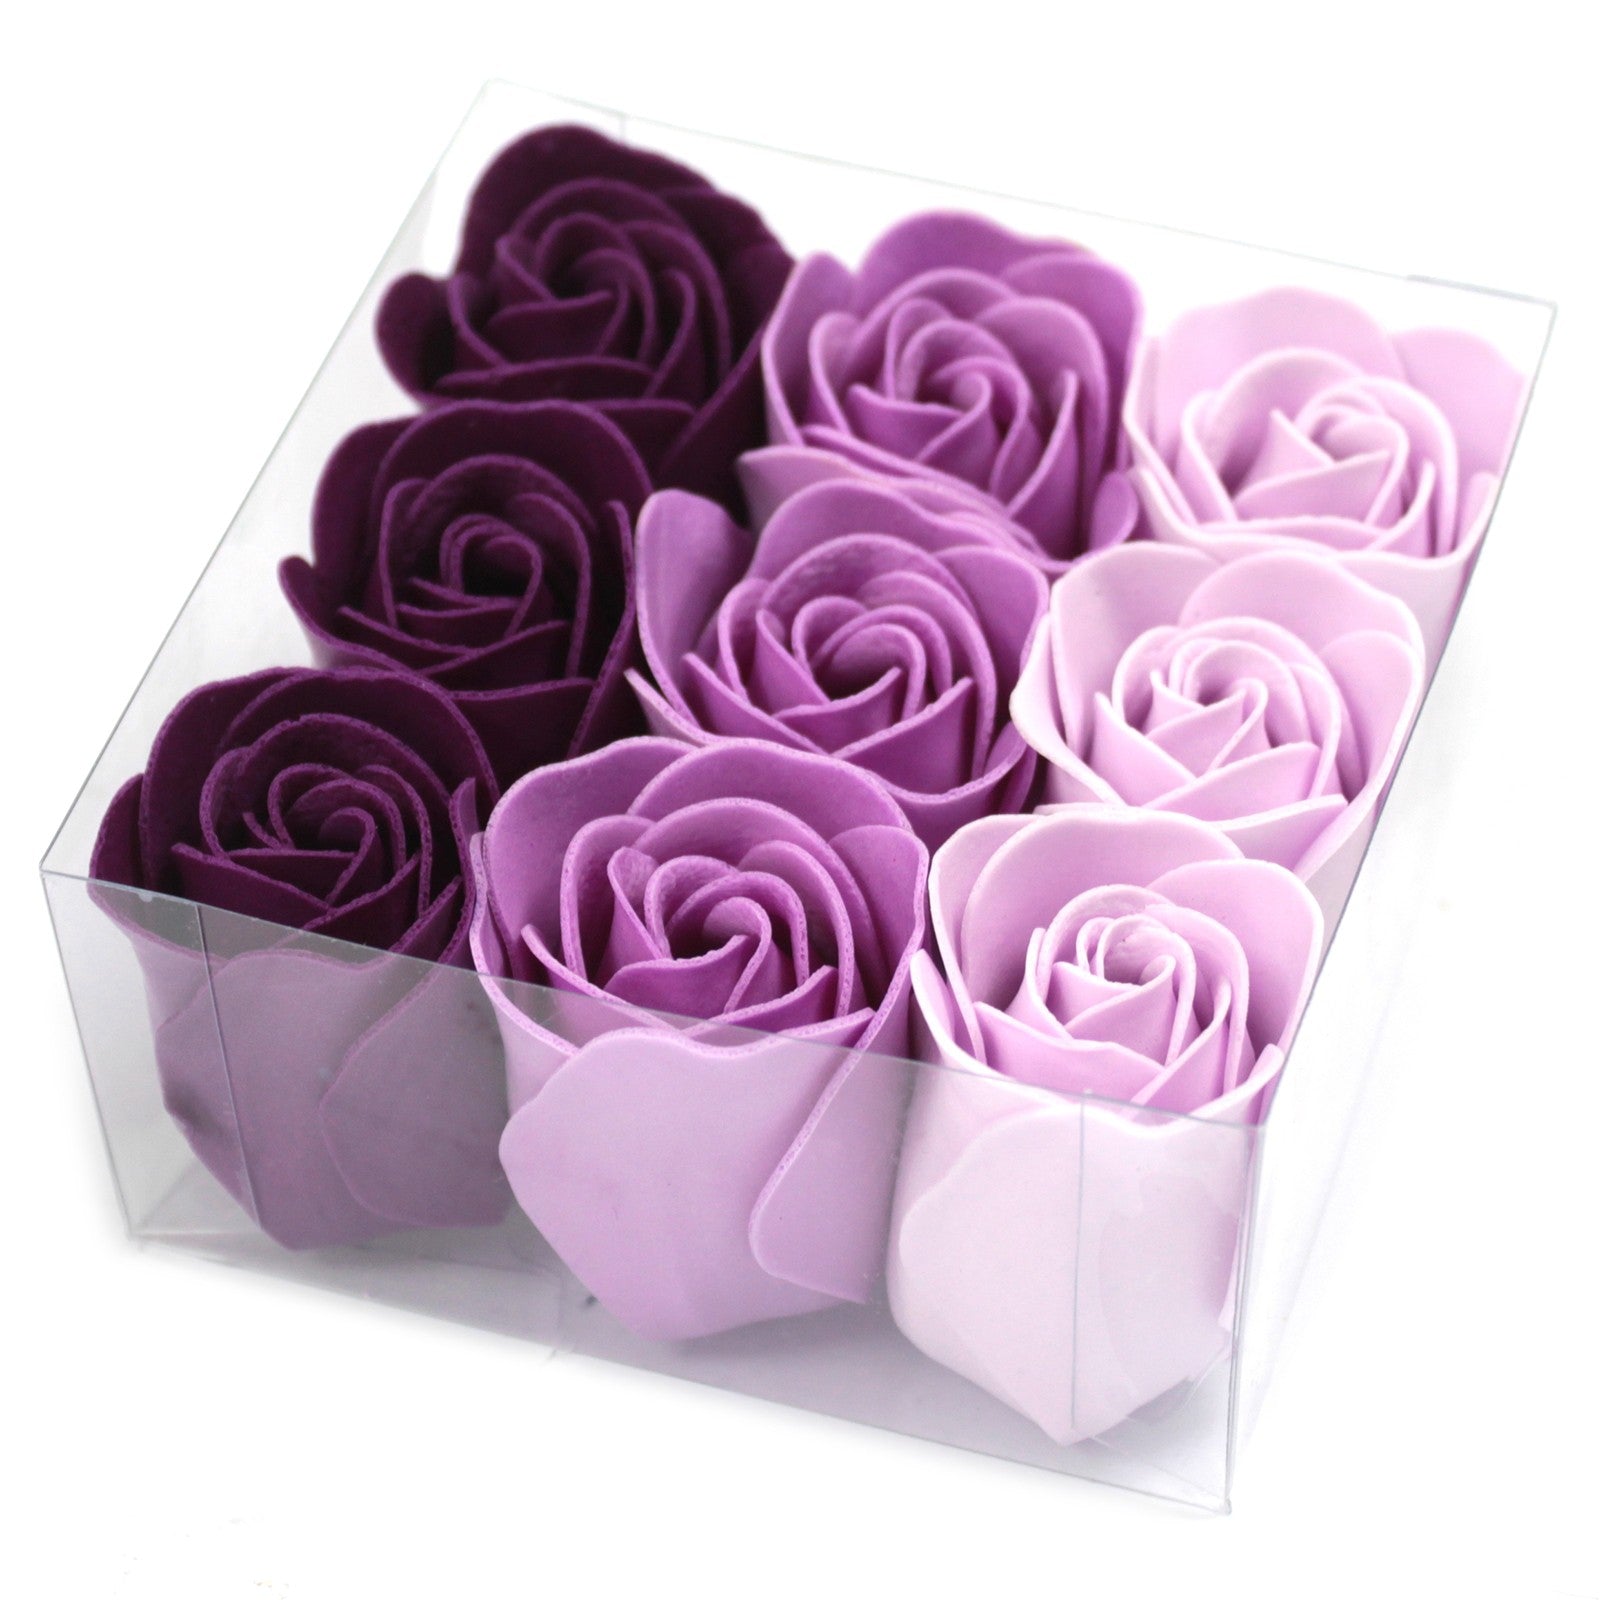 Soap Flower Gift Sets | Ultrabee